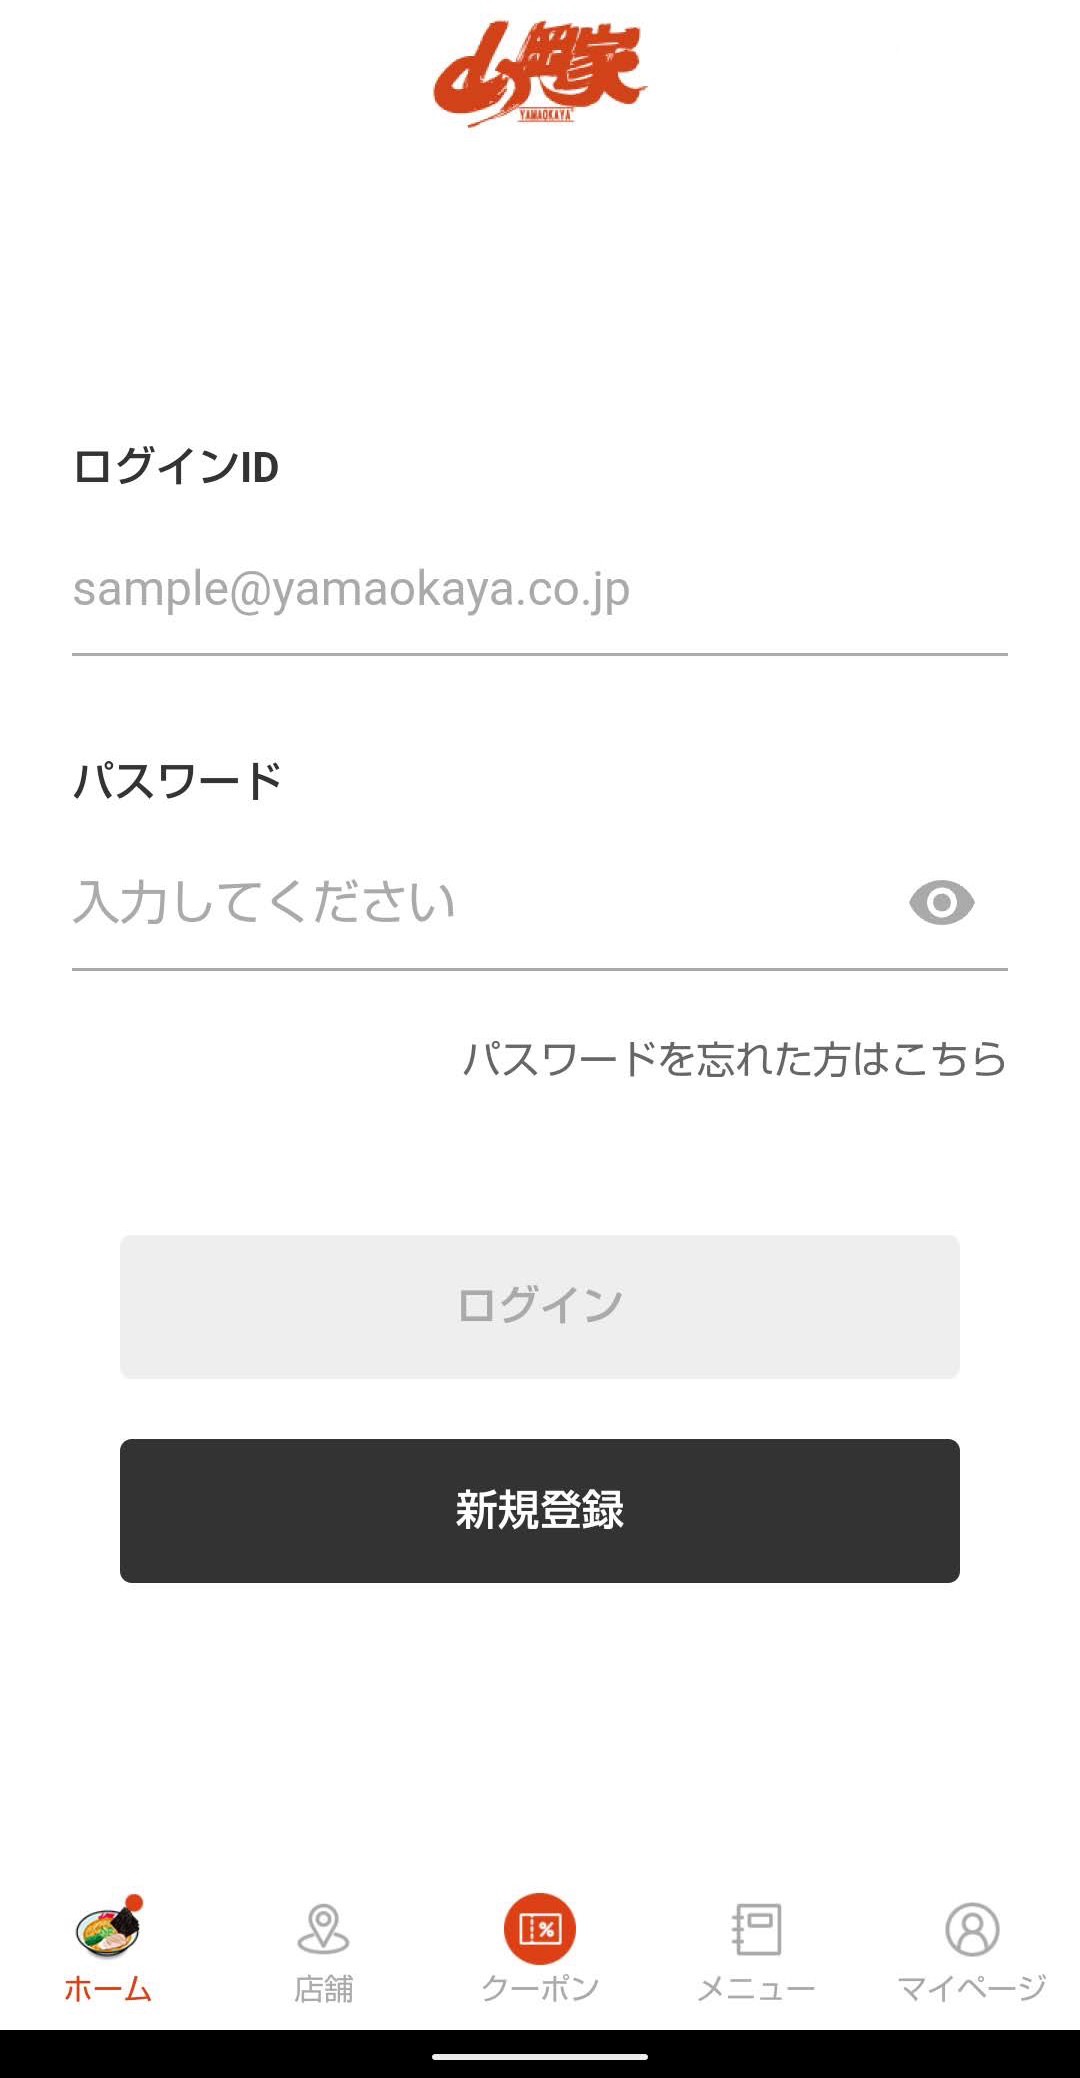 ラーメン山岡家公式アプリ　ユーザー登録ログイン　ログイン画面